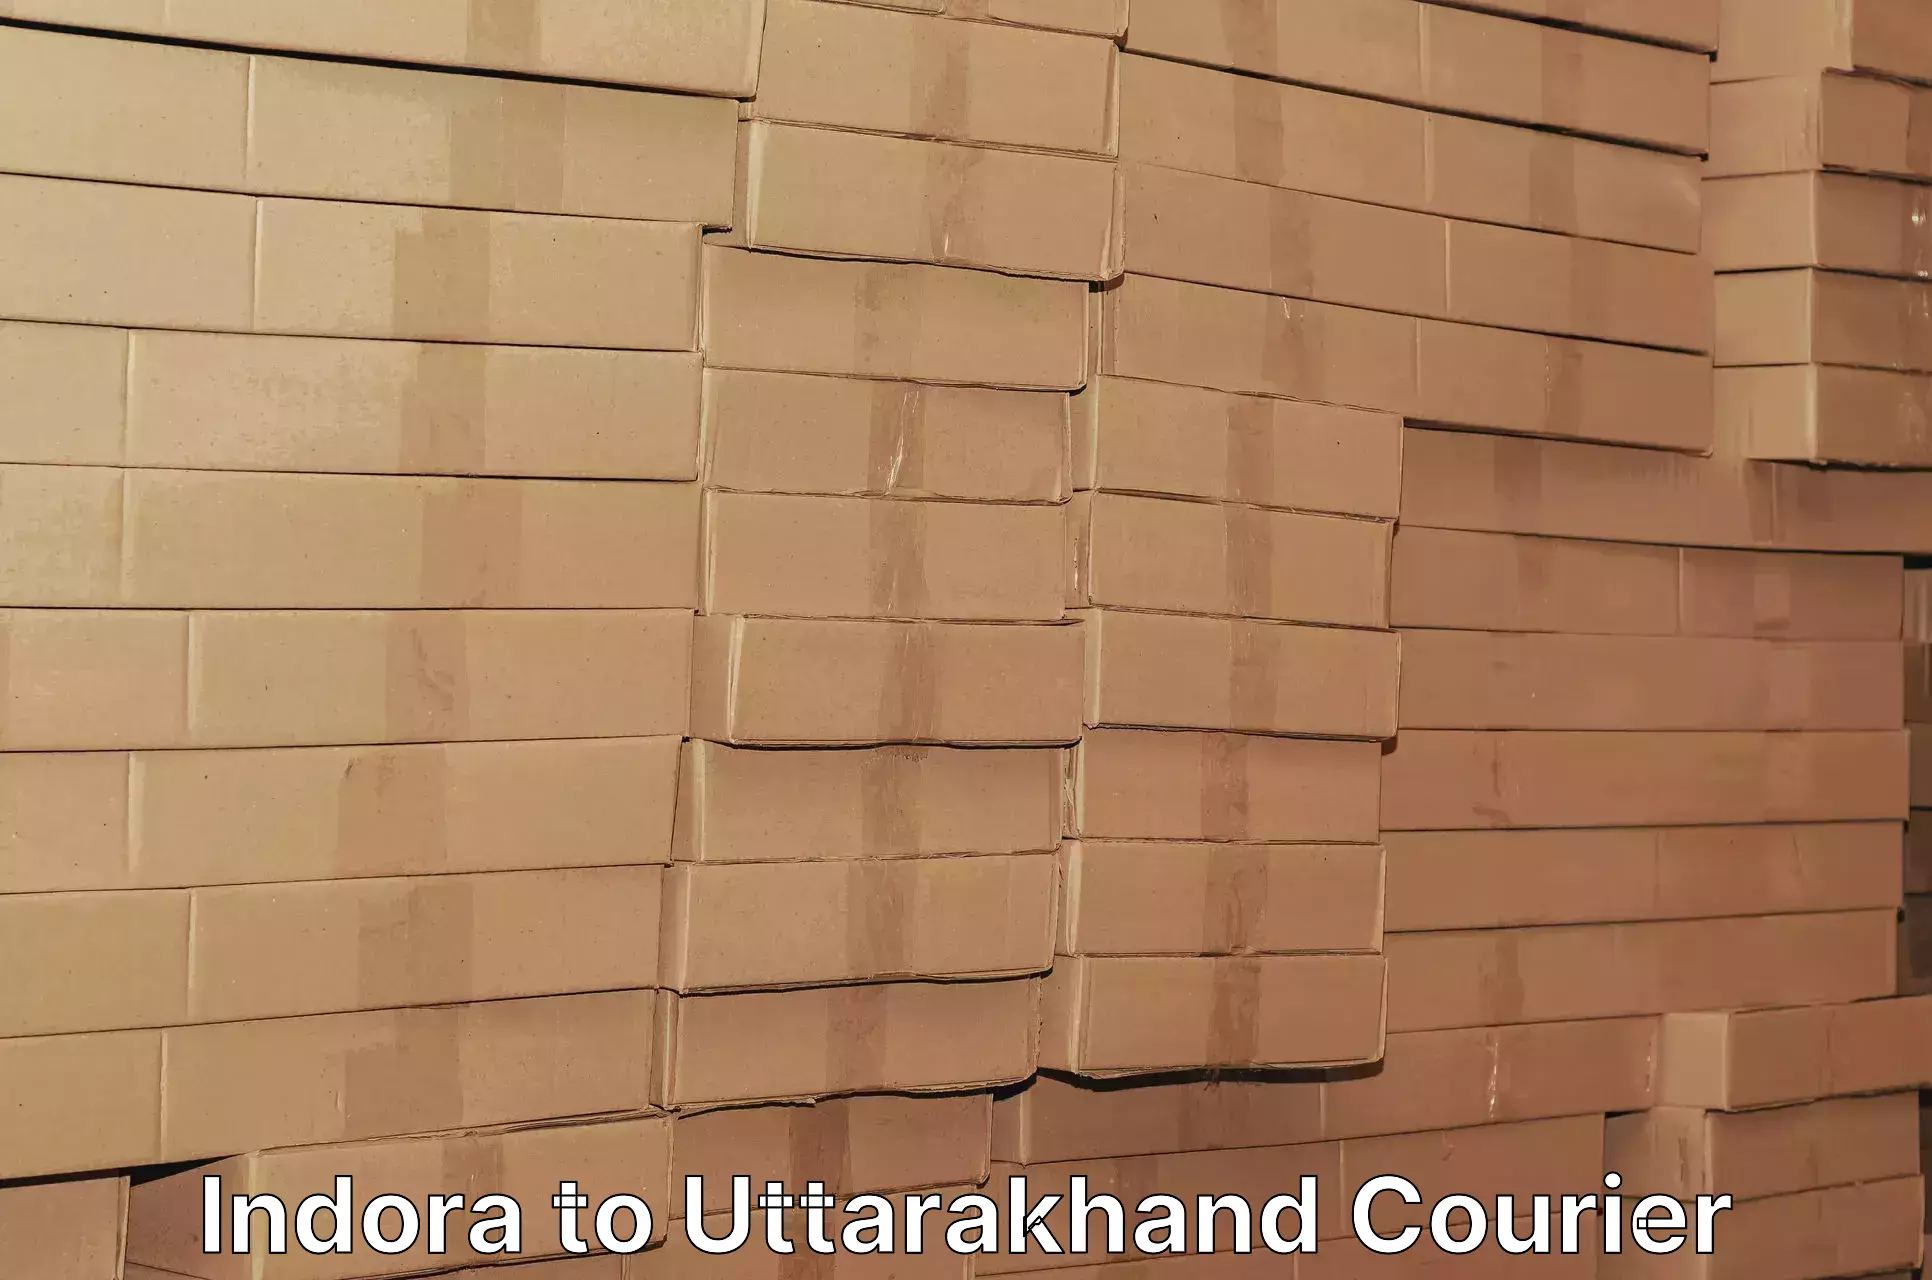 Global shipping networks Indora to Uttarakhand